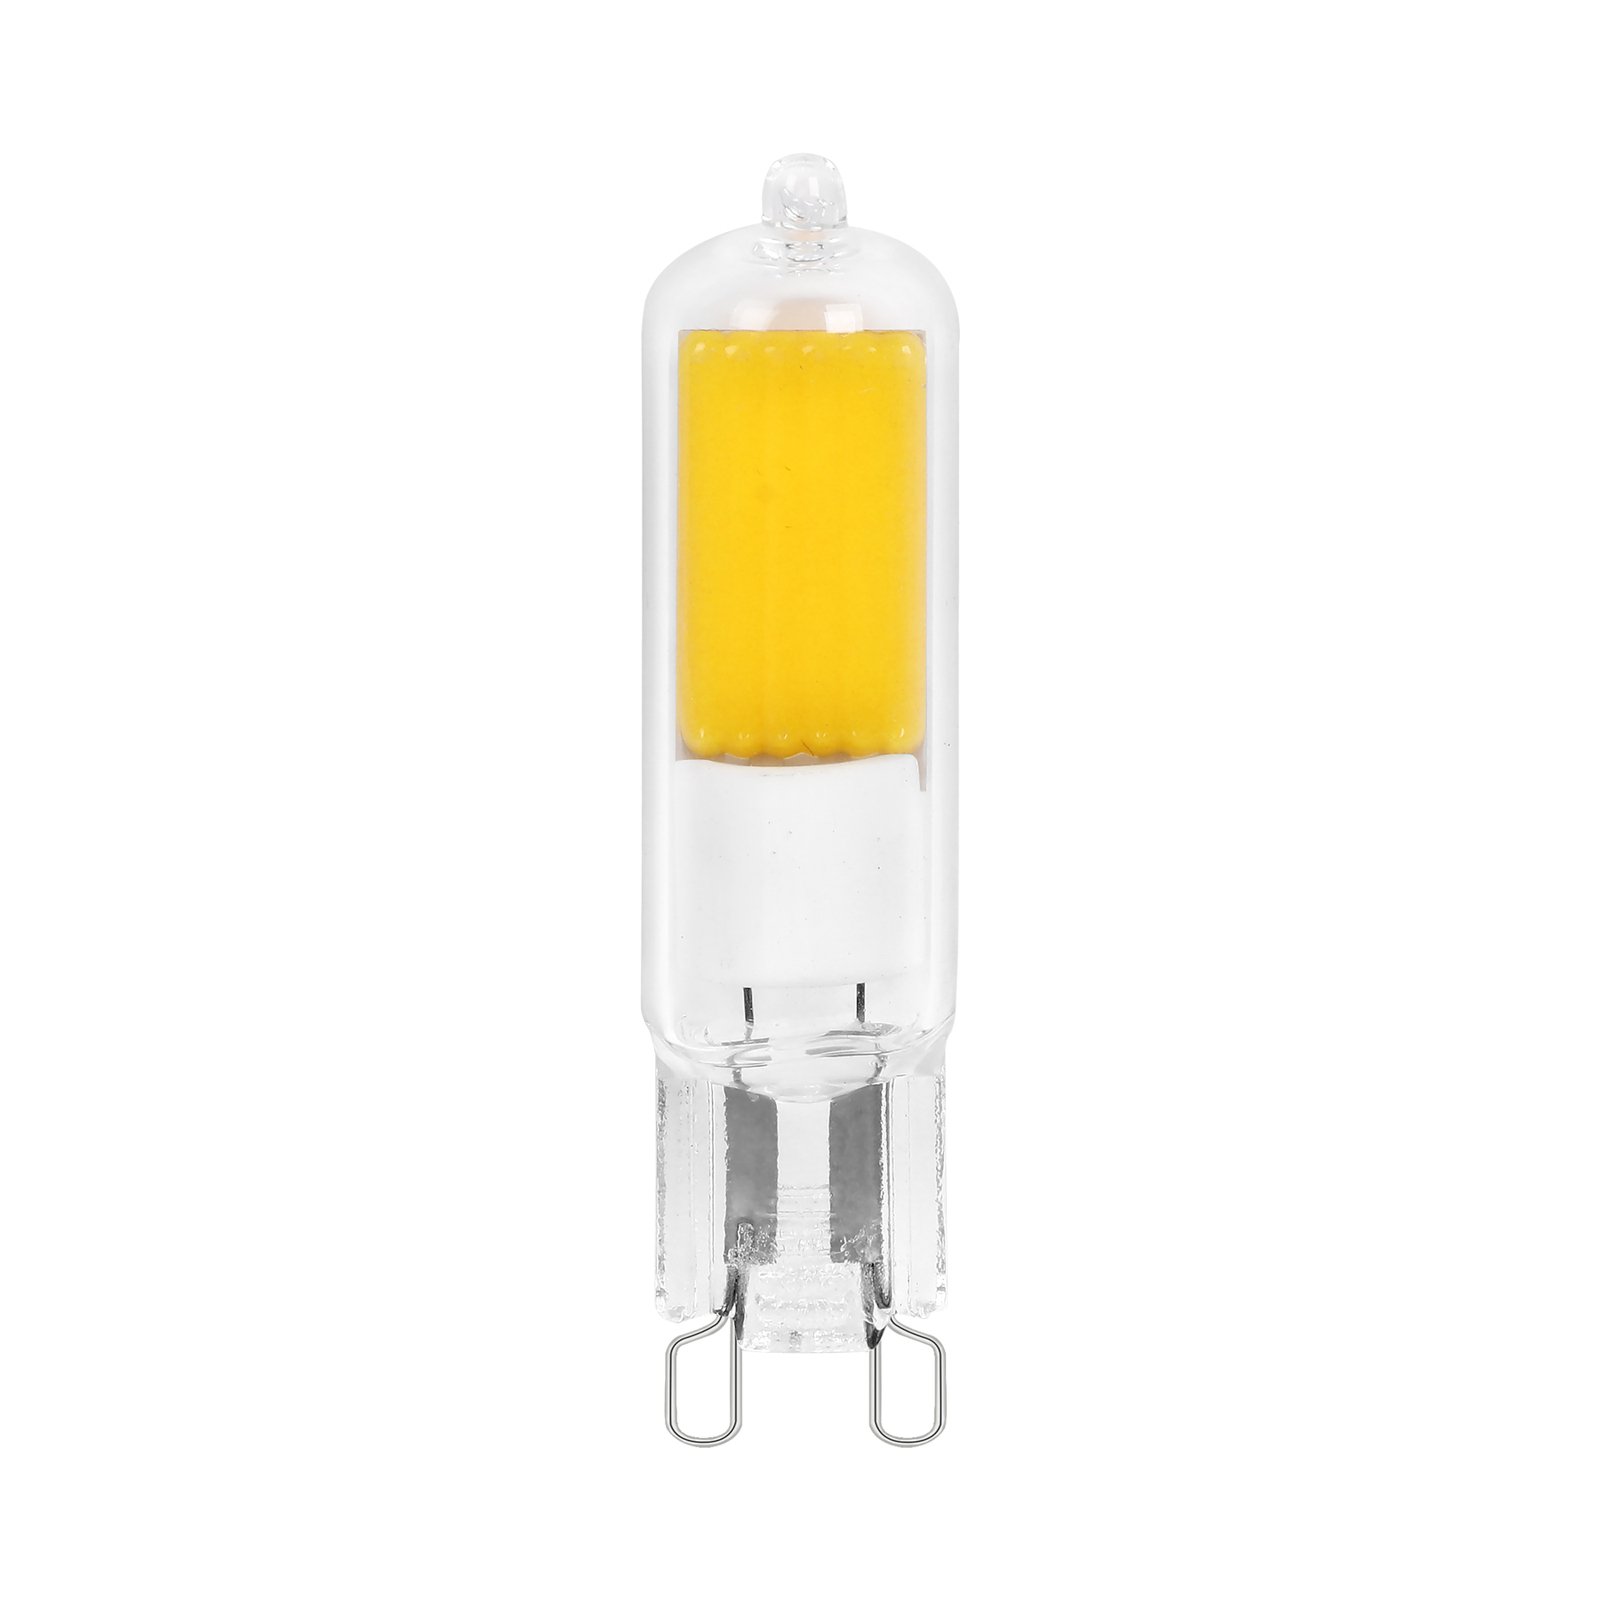 Arcchio G9 bi-pin LED bulb 2 W 2,700 K